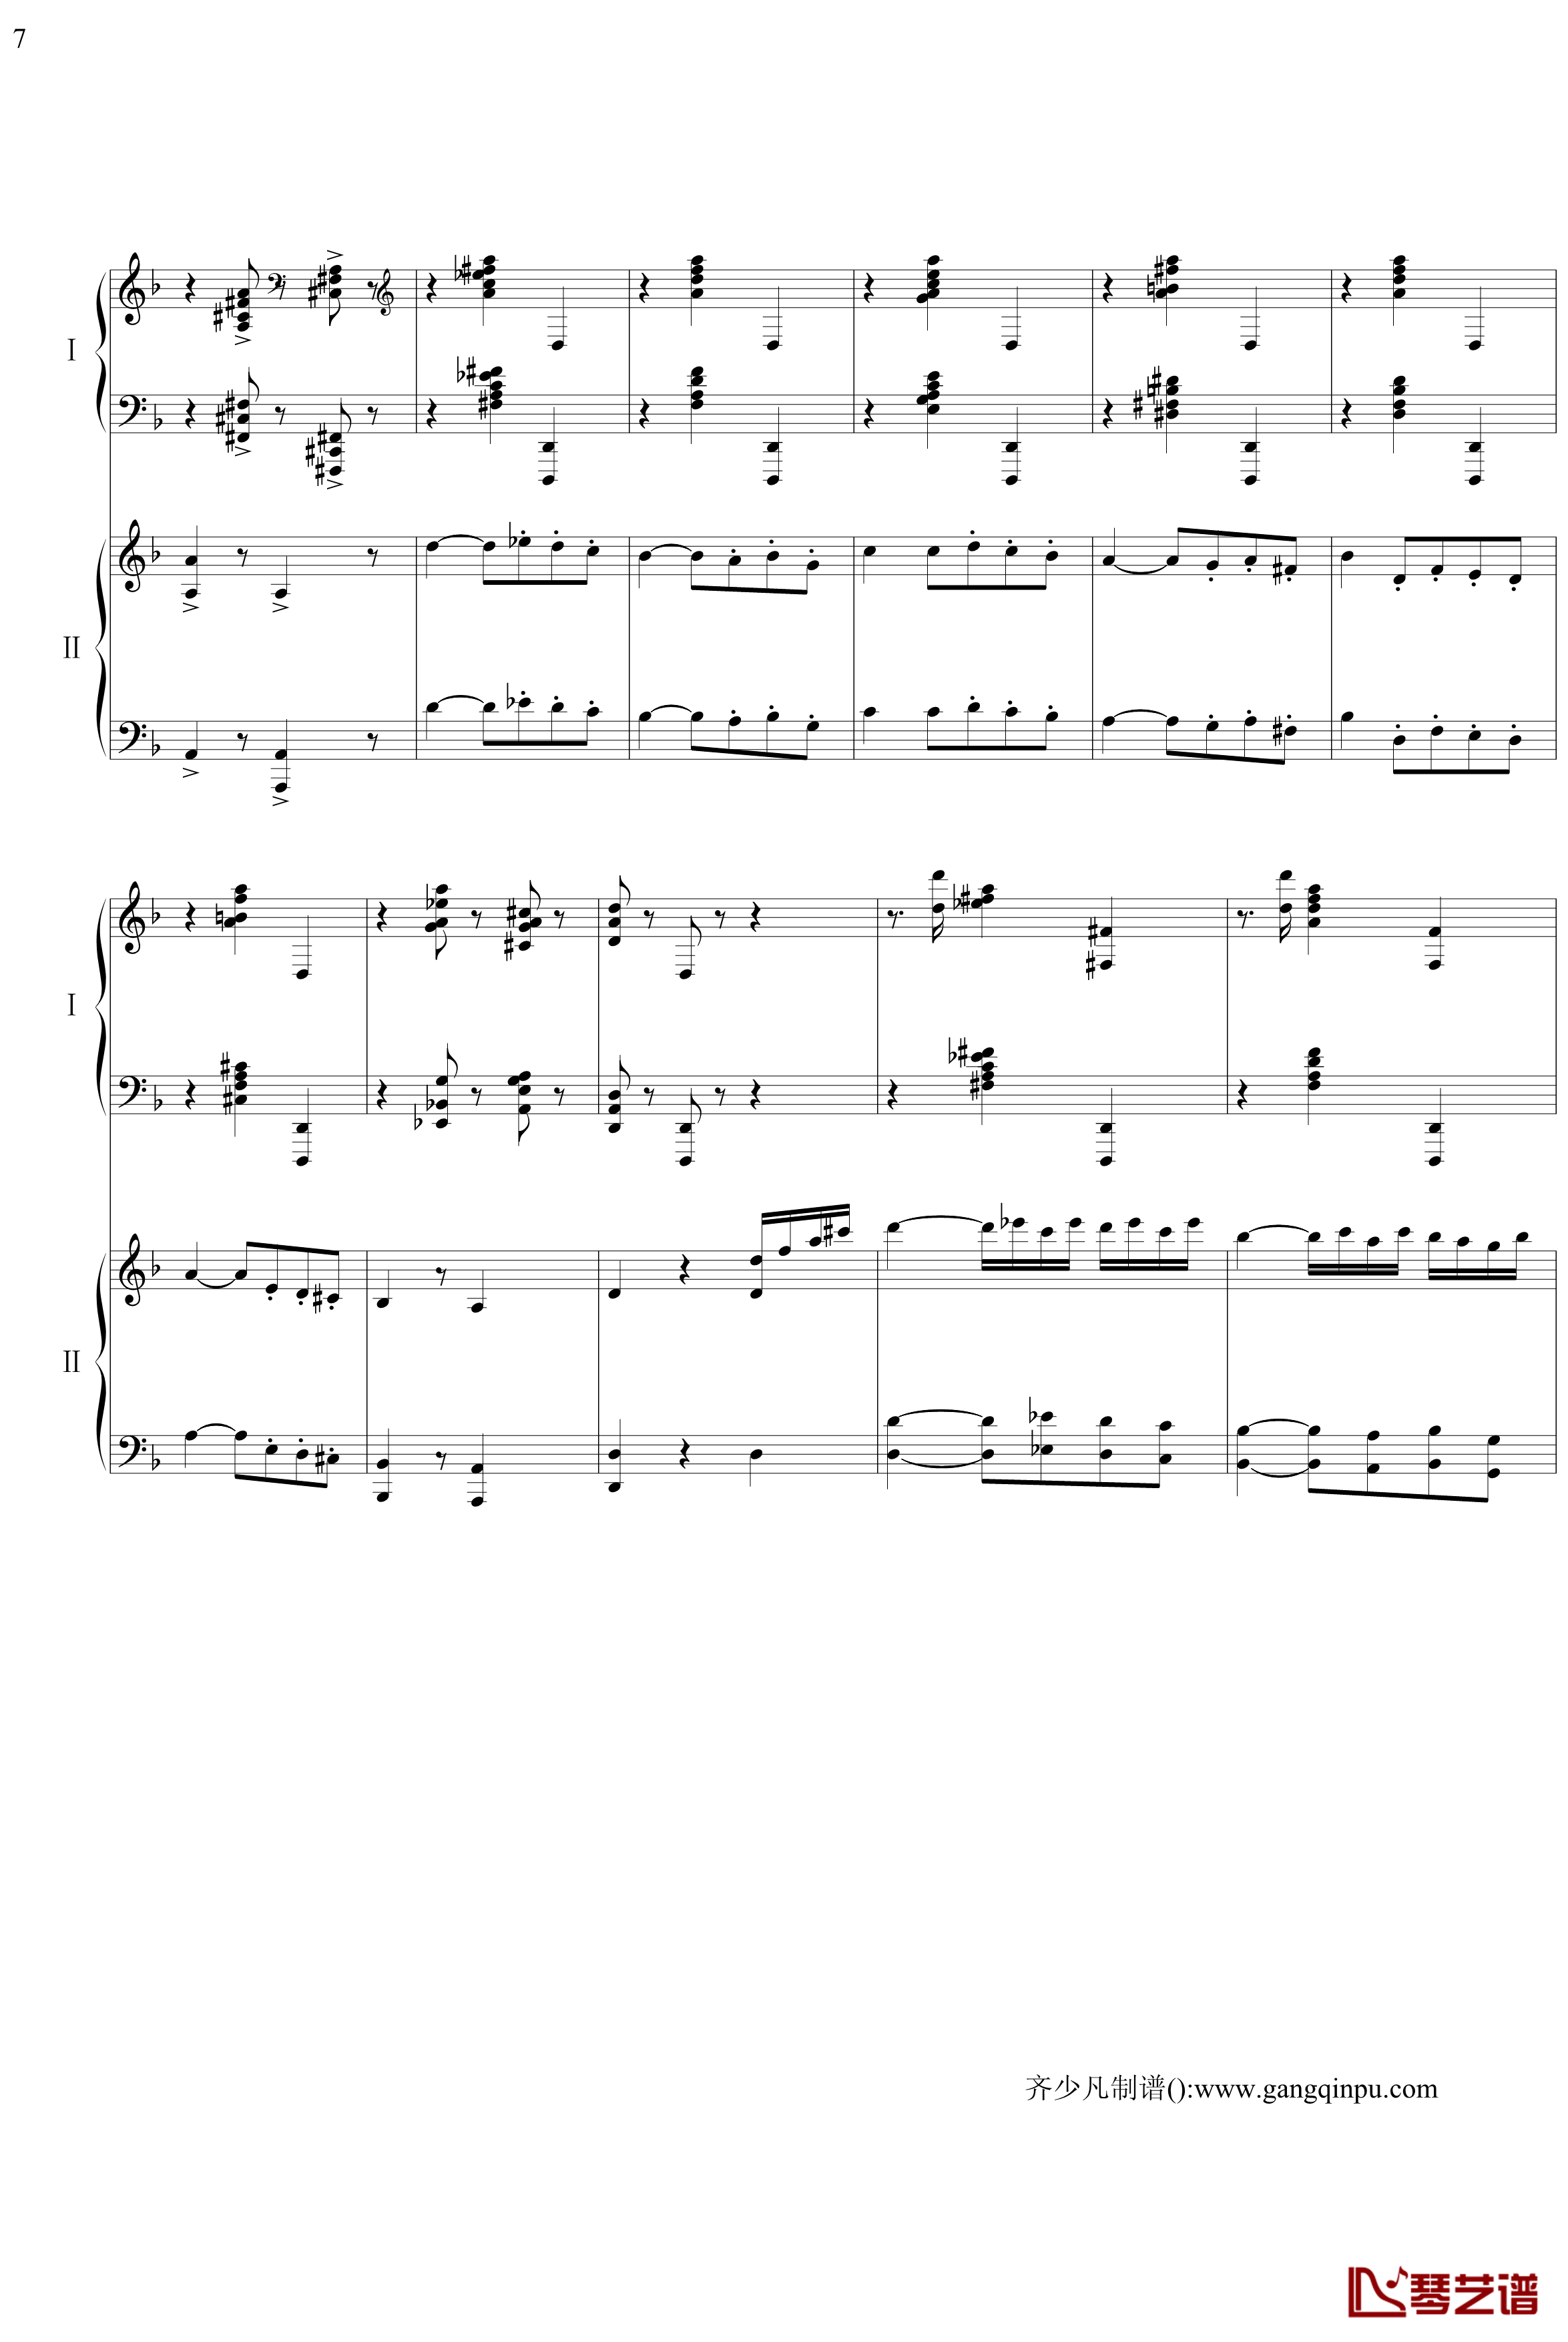 帕格尼尼主题狂想曲钢琴谱-11~18变奏-拉赫马尼若夫